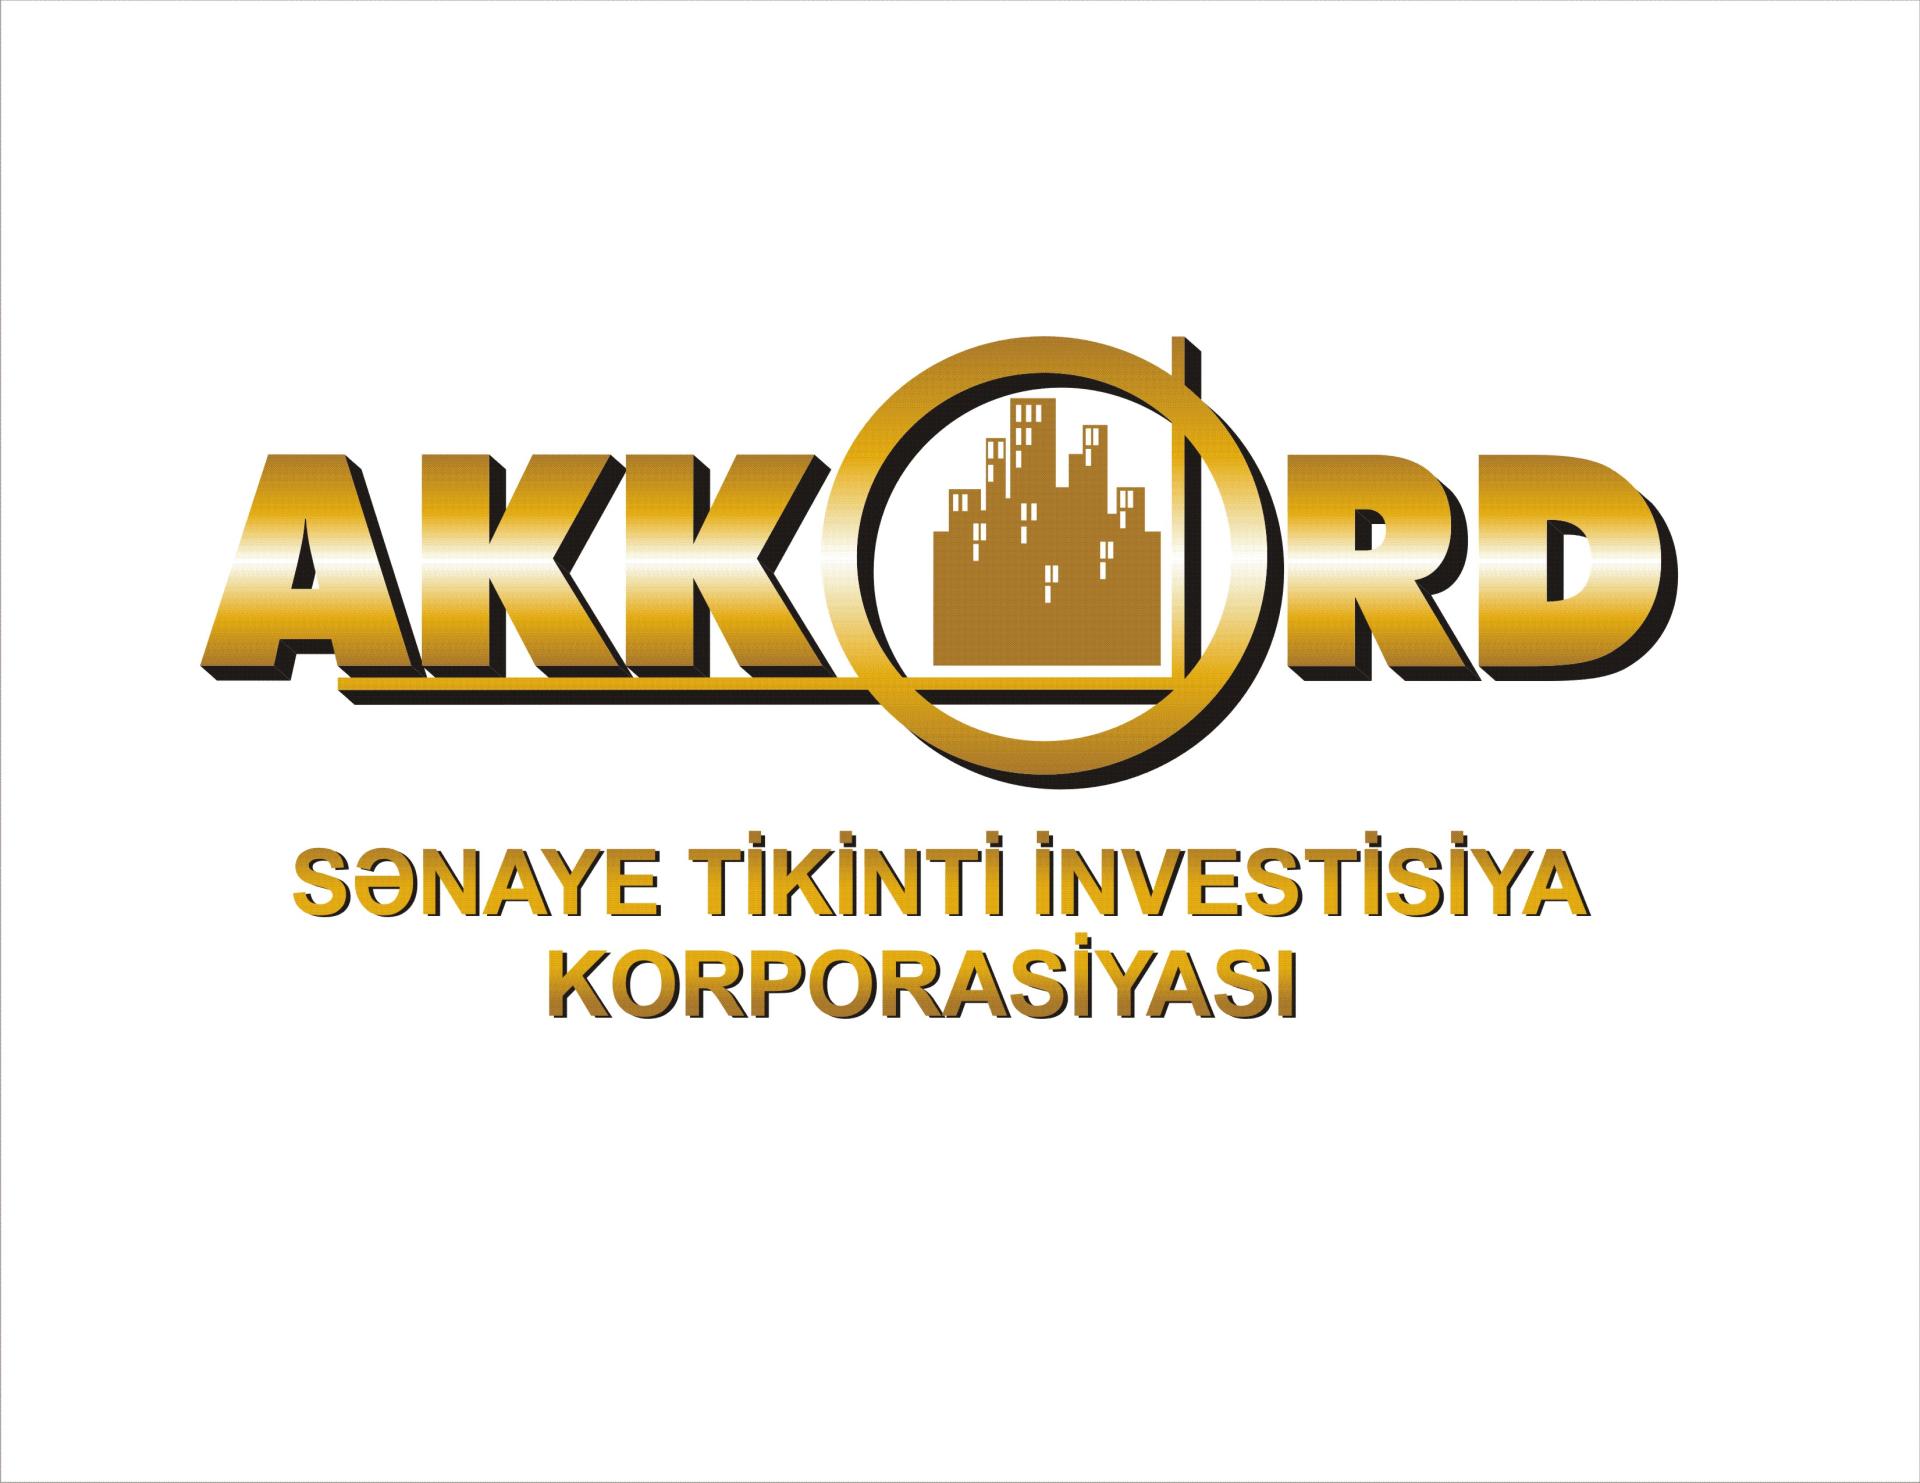 Азербайджанская Akkord стала подрядчиком двух крупных дорожных проектов в Грузии